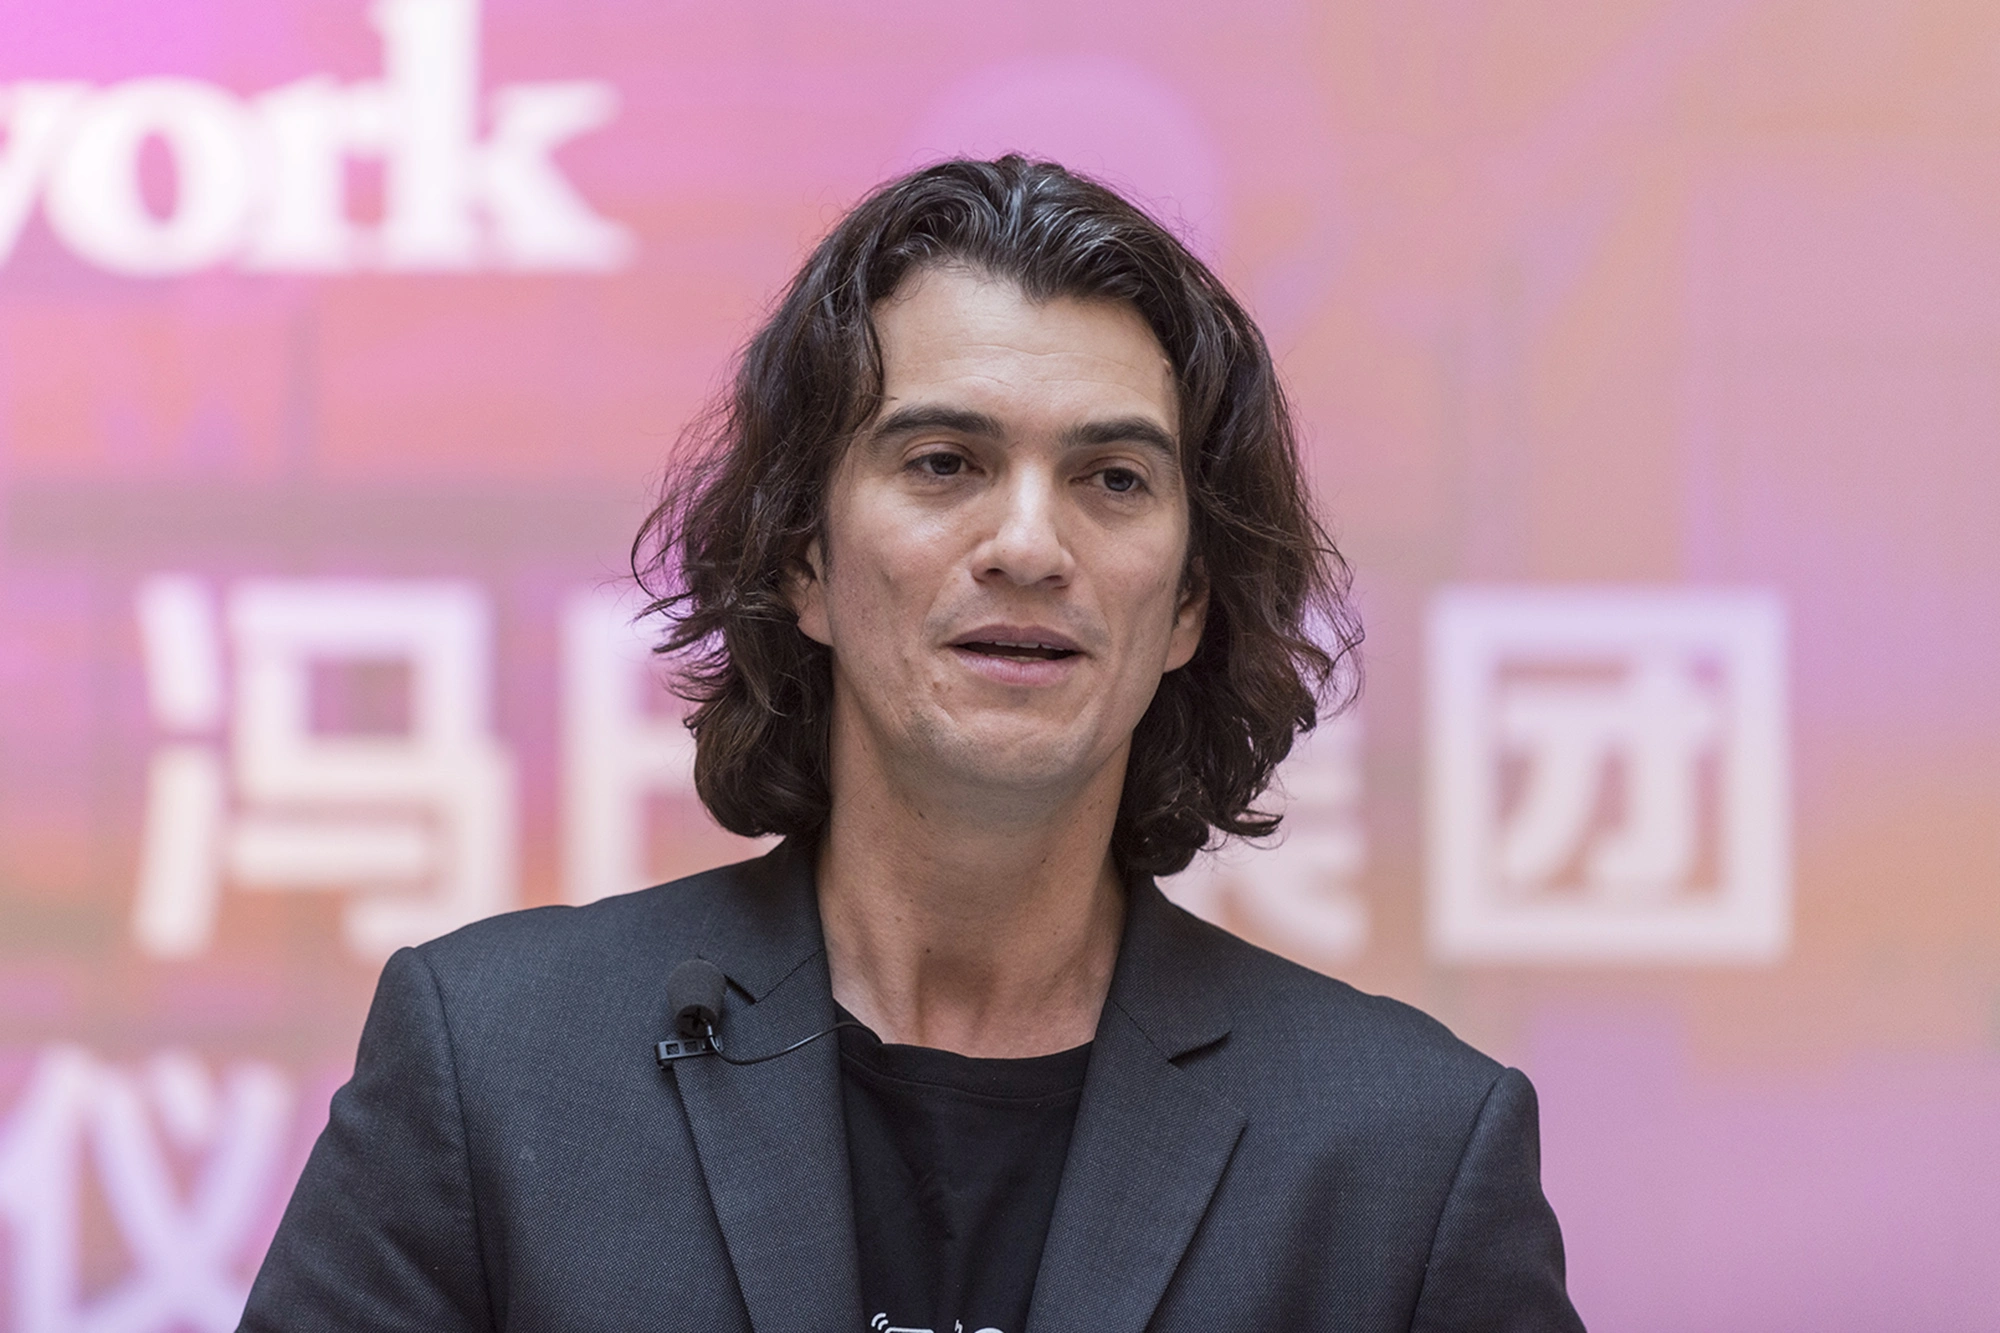 WeWork founder, Adam Neumann